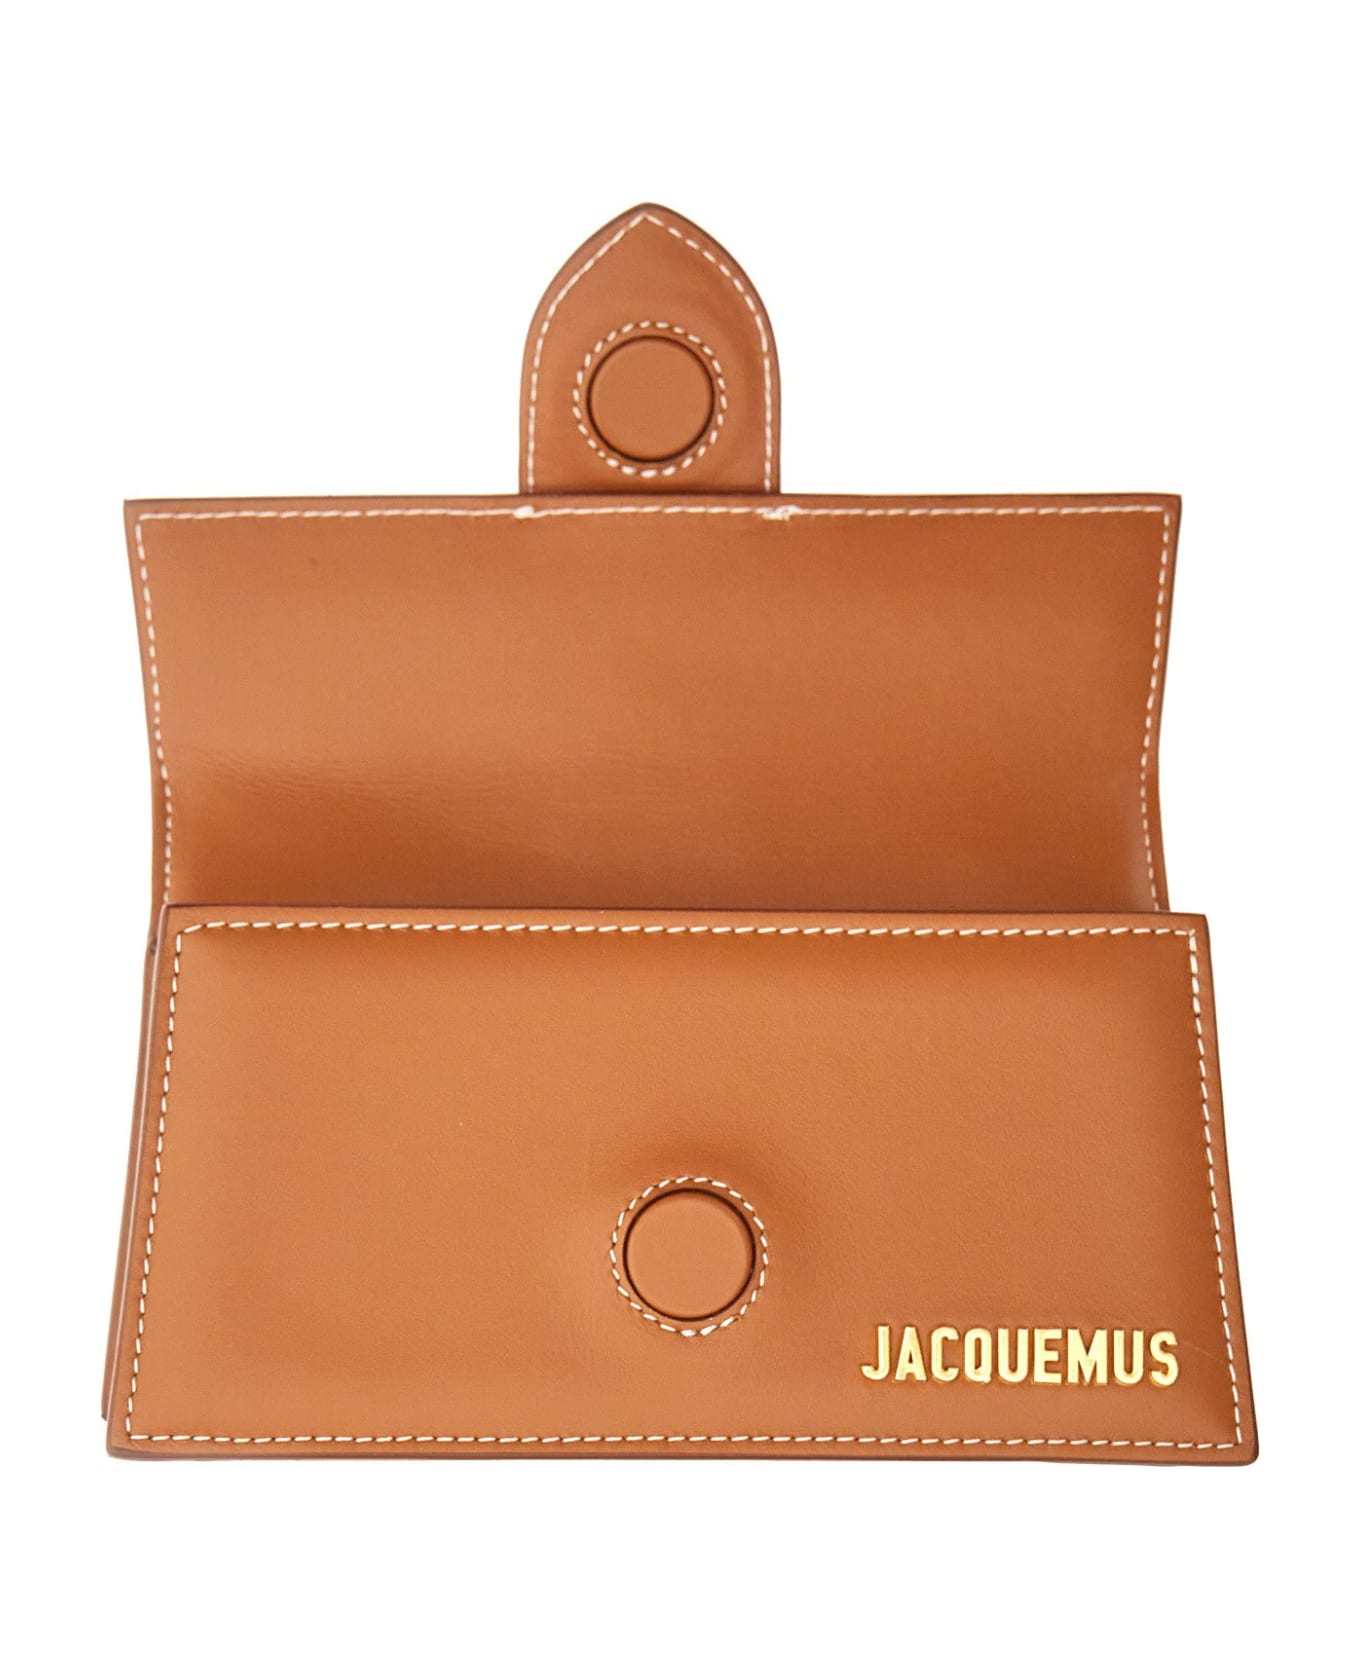 Jacquemus Le Bambino Top Handle Bag